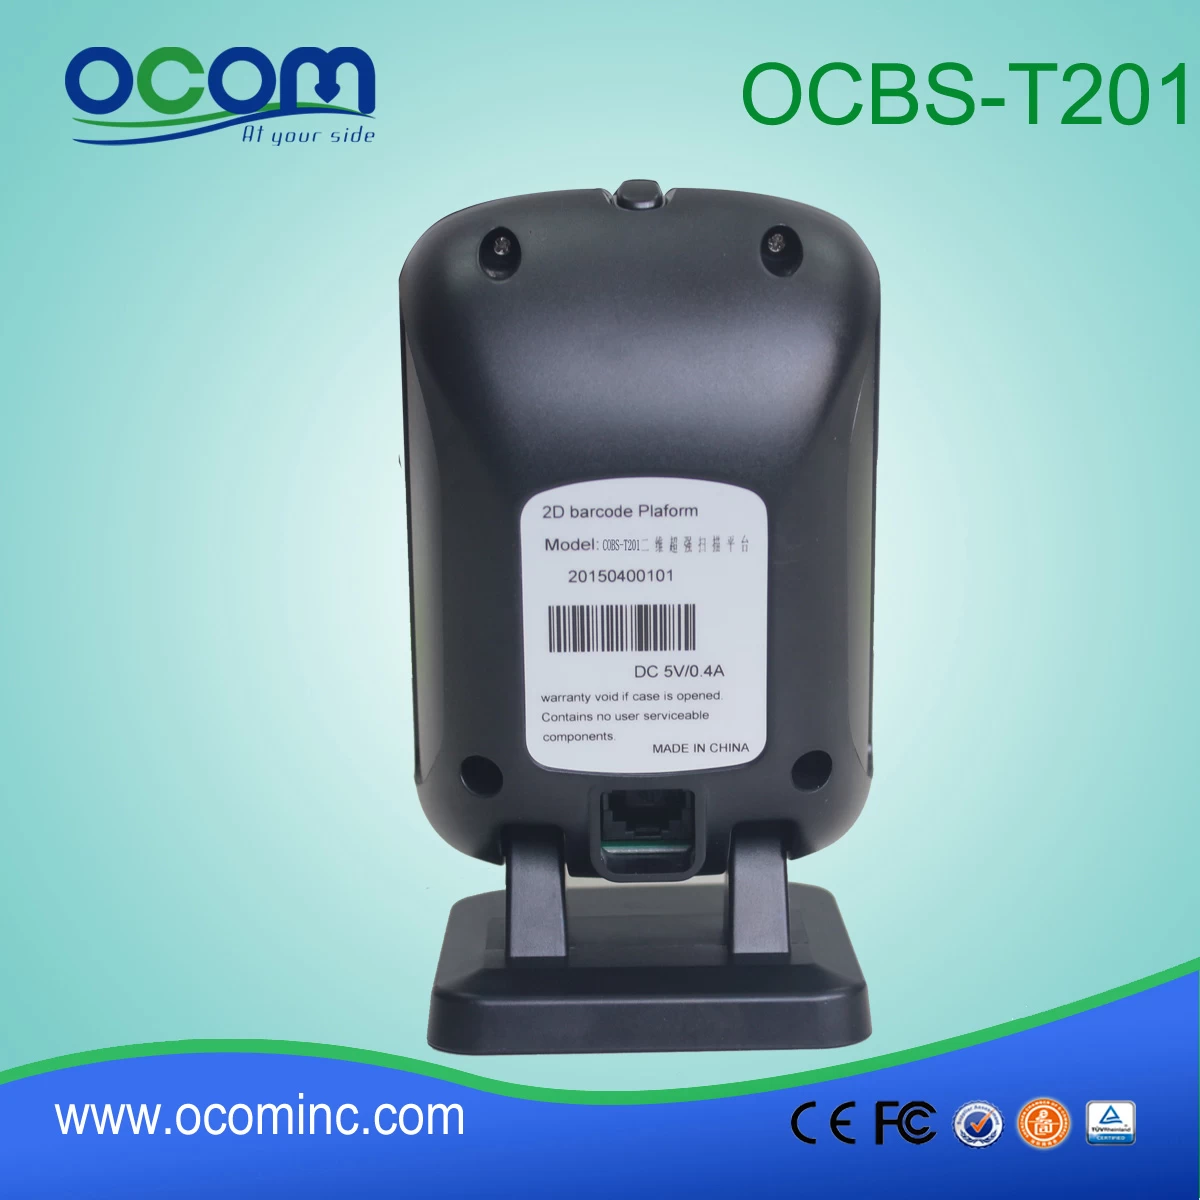 OCBS-T201:qr barcode scanner gun, barcode scanner suppliers